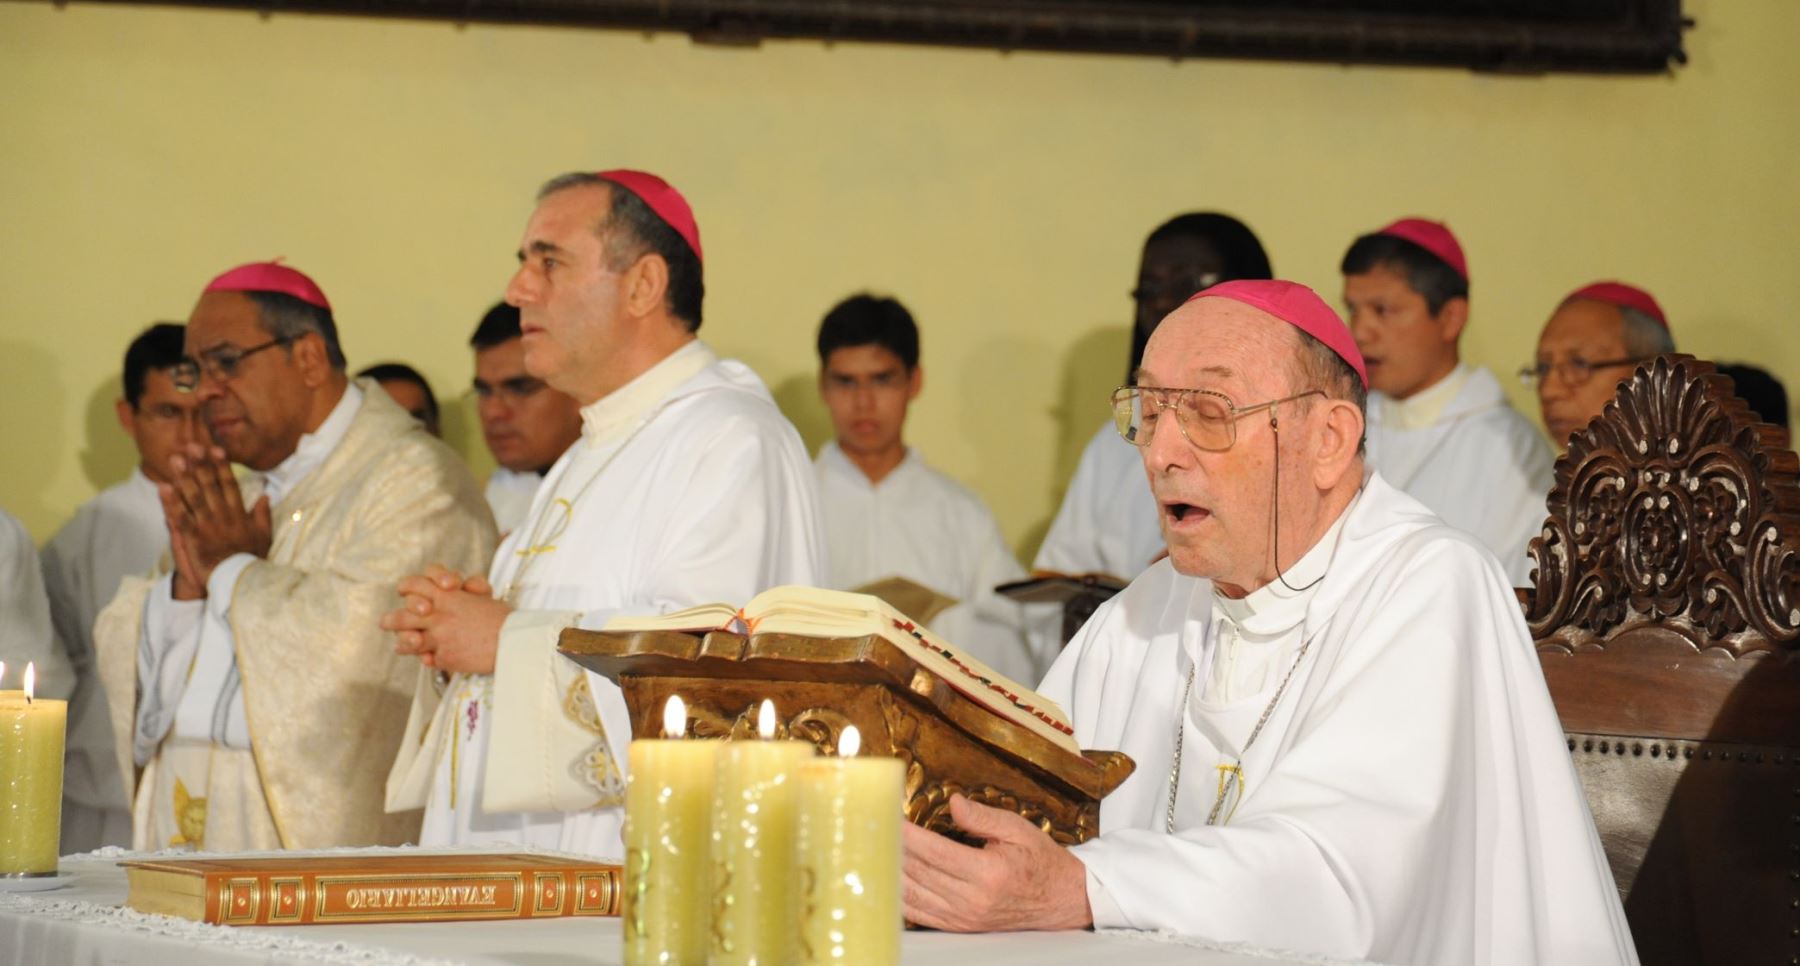 Fue trasladado por el Papa Juan Pablo II a la Diócesis de Lurín, convirtiéndose en su primer obispo el 25 de enero de 1997.